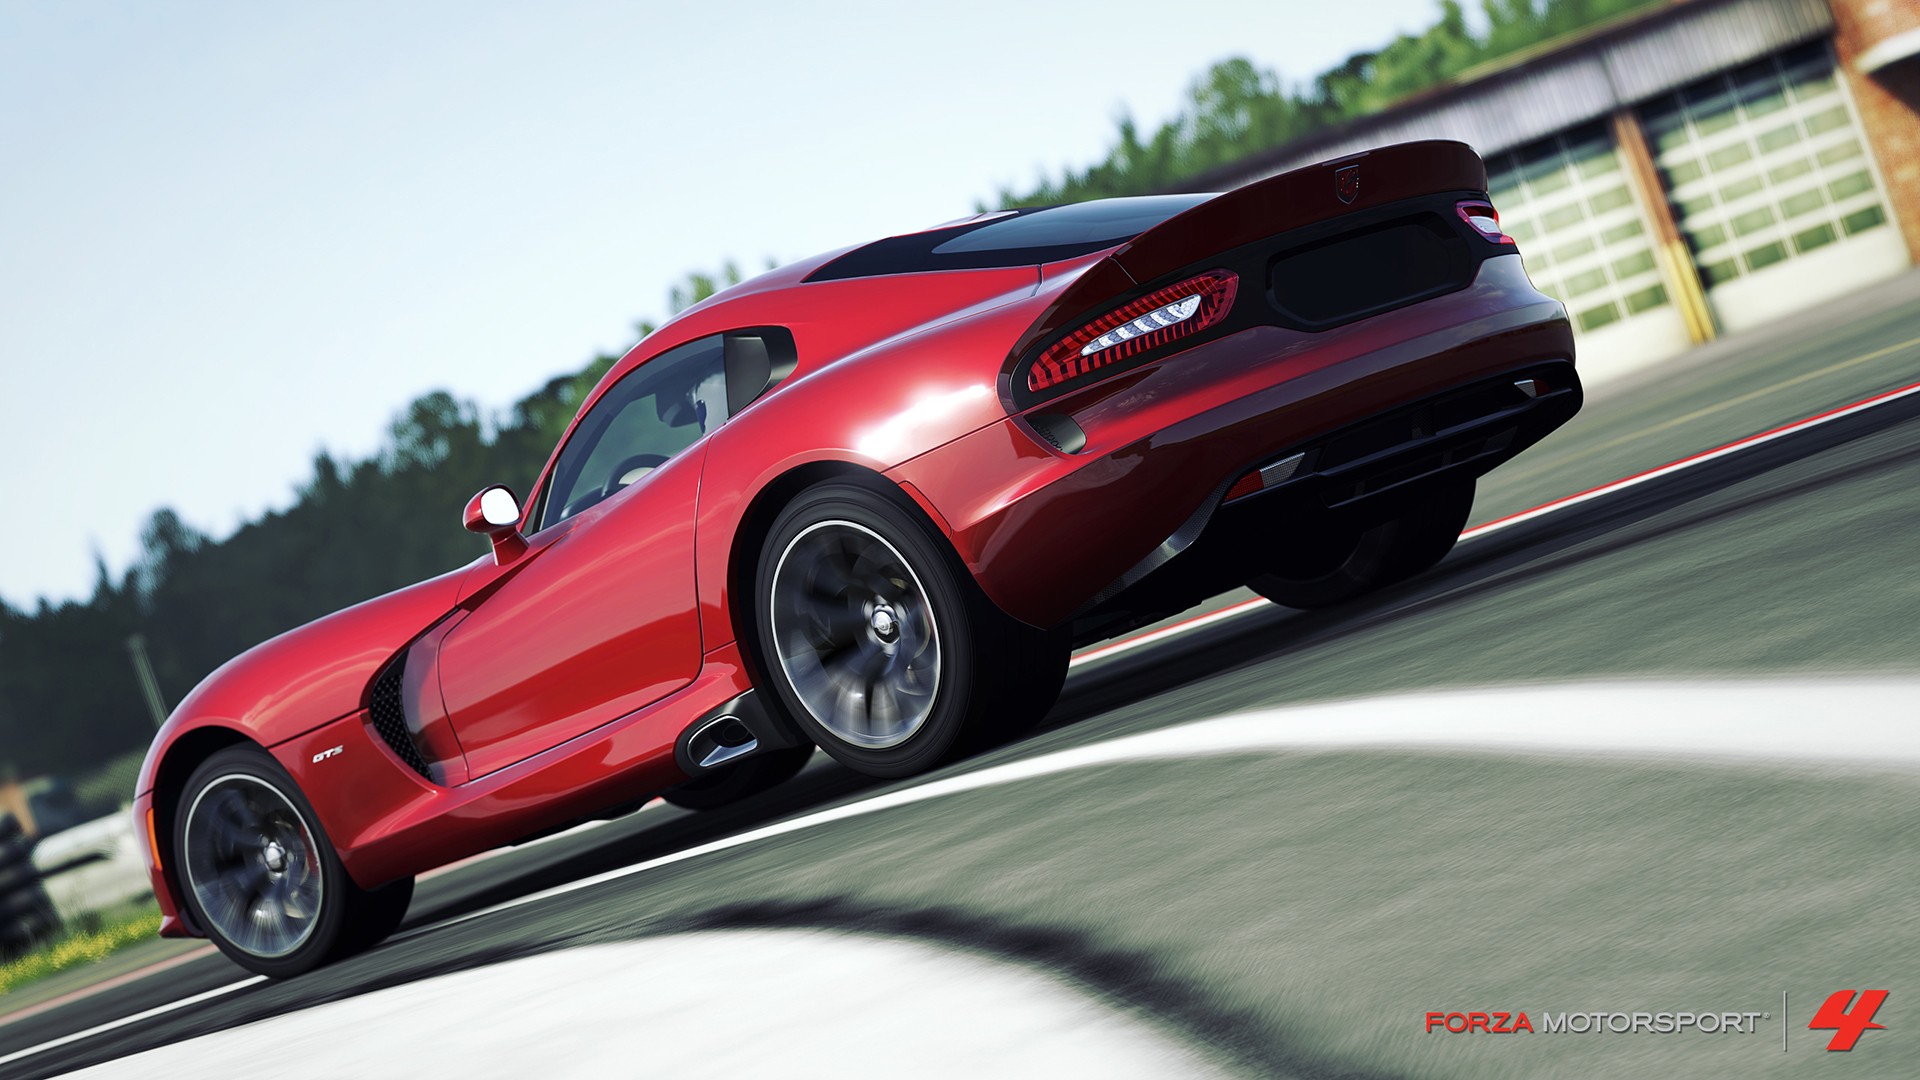 Descarga gratuita de fondo de pantalla para móvil de Forza Motorsport, Fuerza, Videojuego.